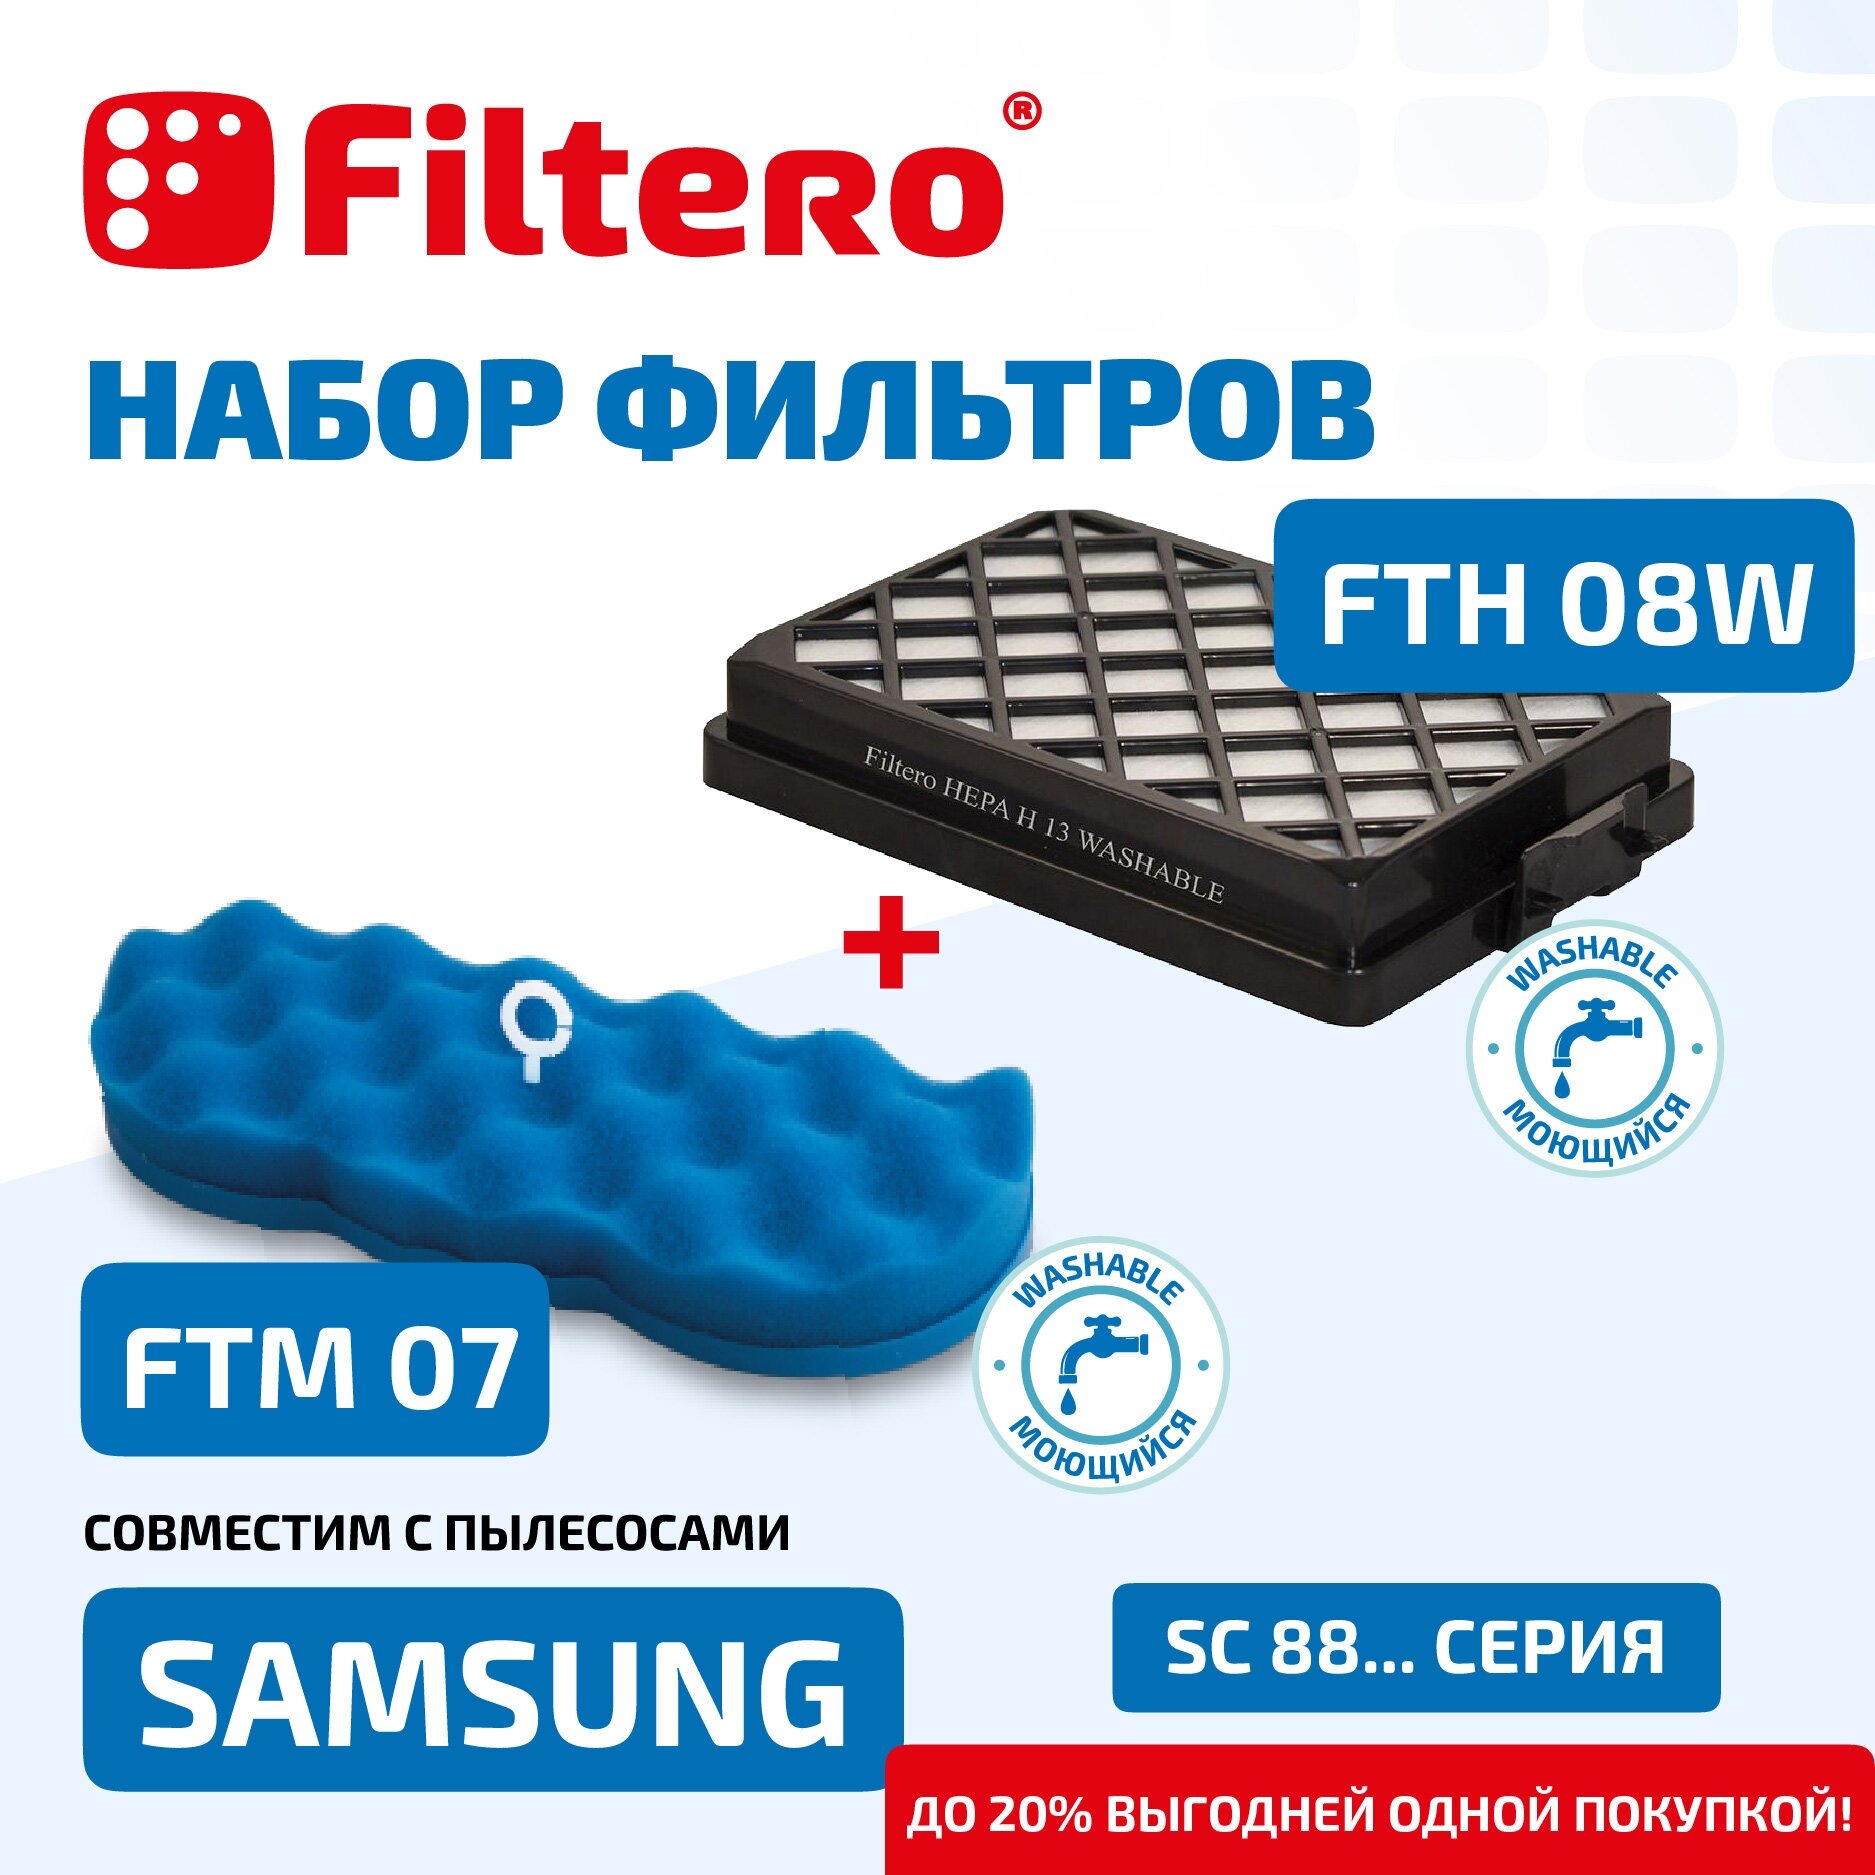 Filtero FTH 08 W + FTM 07 SAM, набор фильтров для пылесосов Samsung